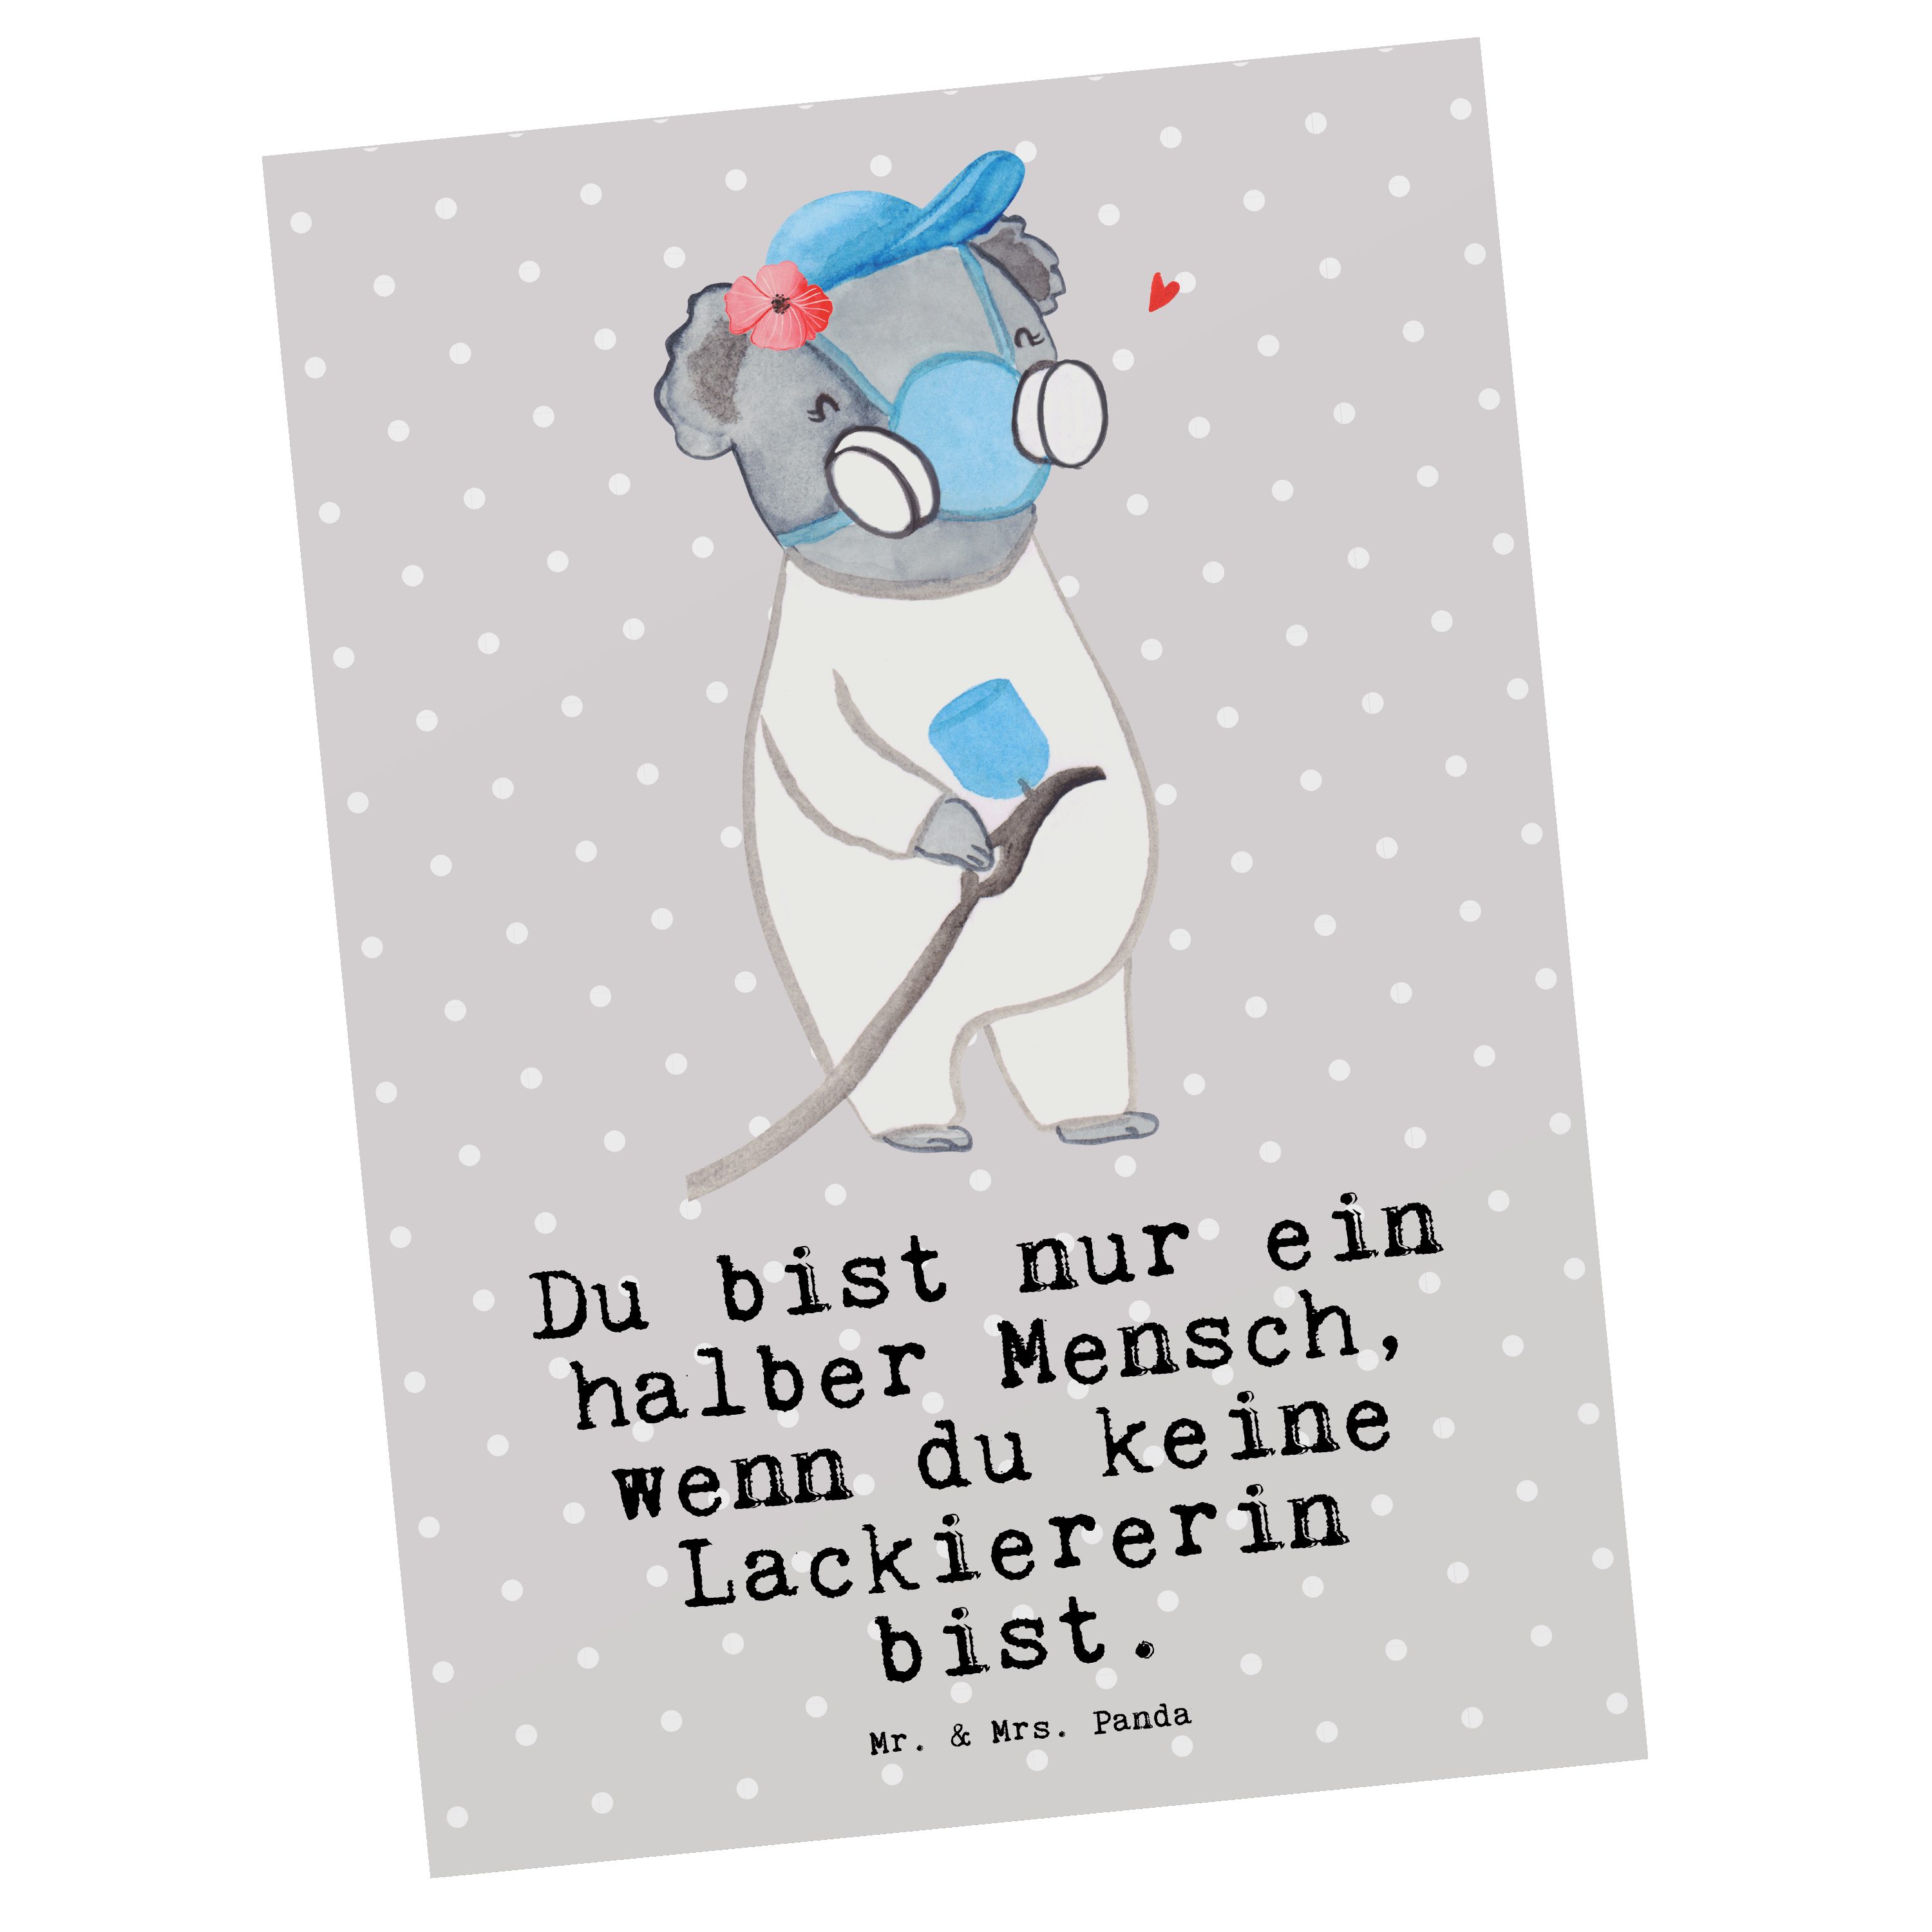 Mr. & Mrs. Panda Grau - Pastell Lackiererin - Auto Einladungskarte, mit Herz Postkarte Geschenk